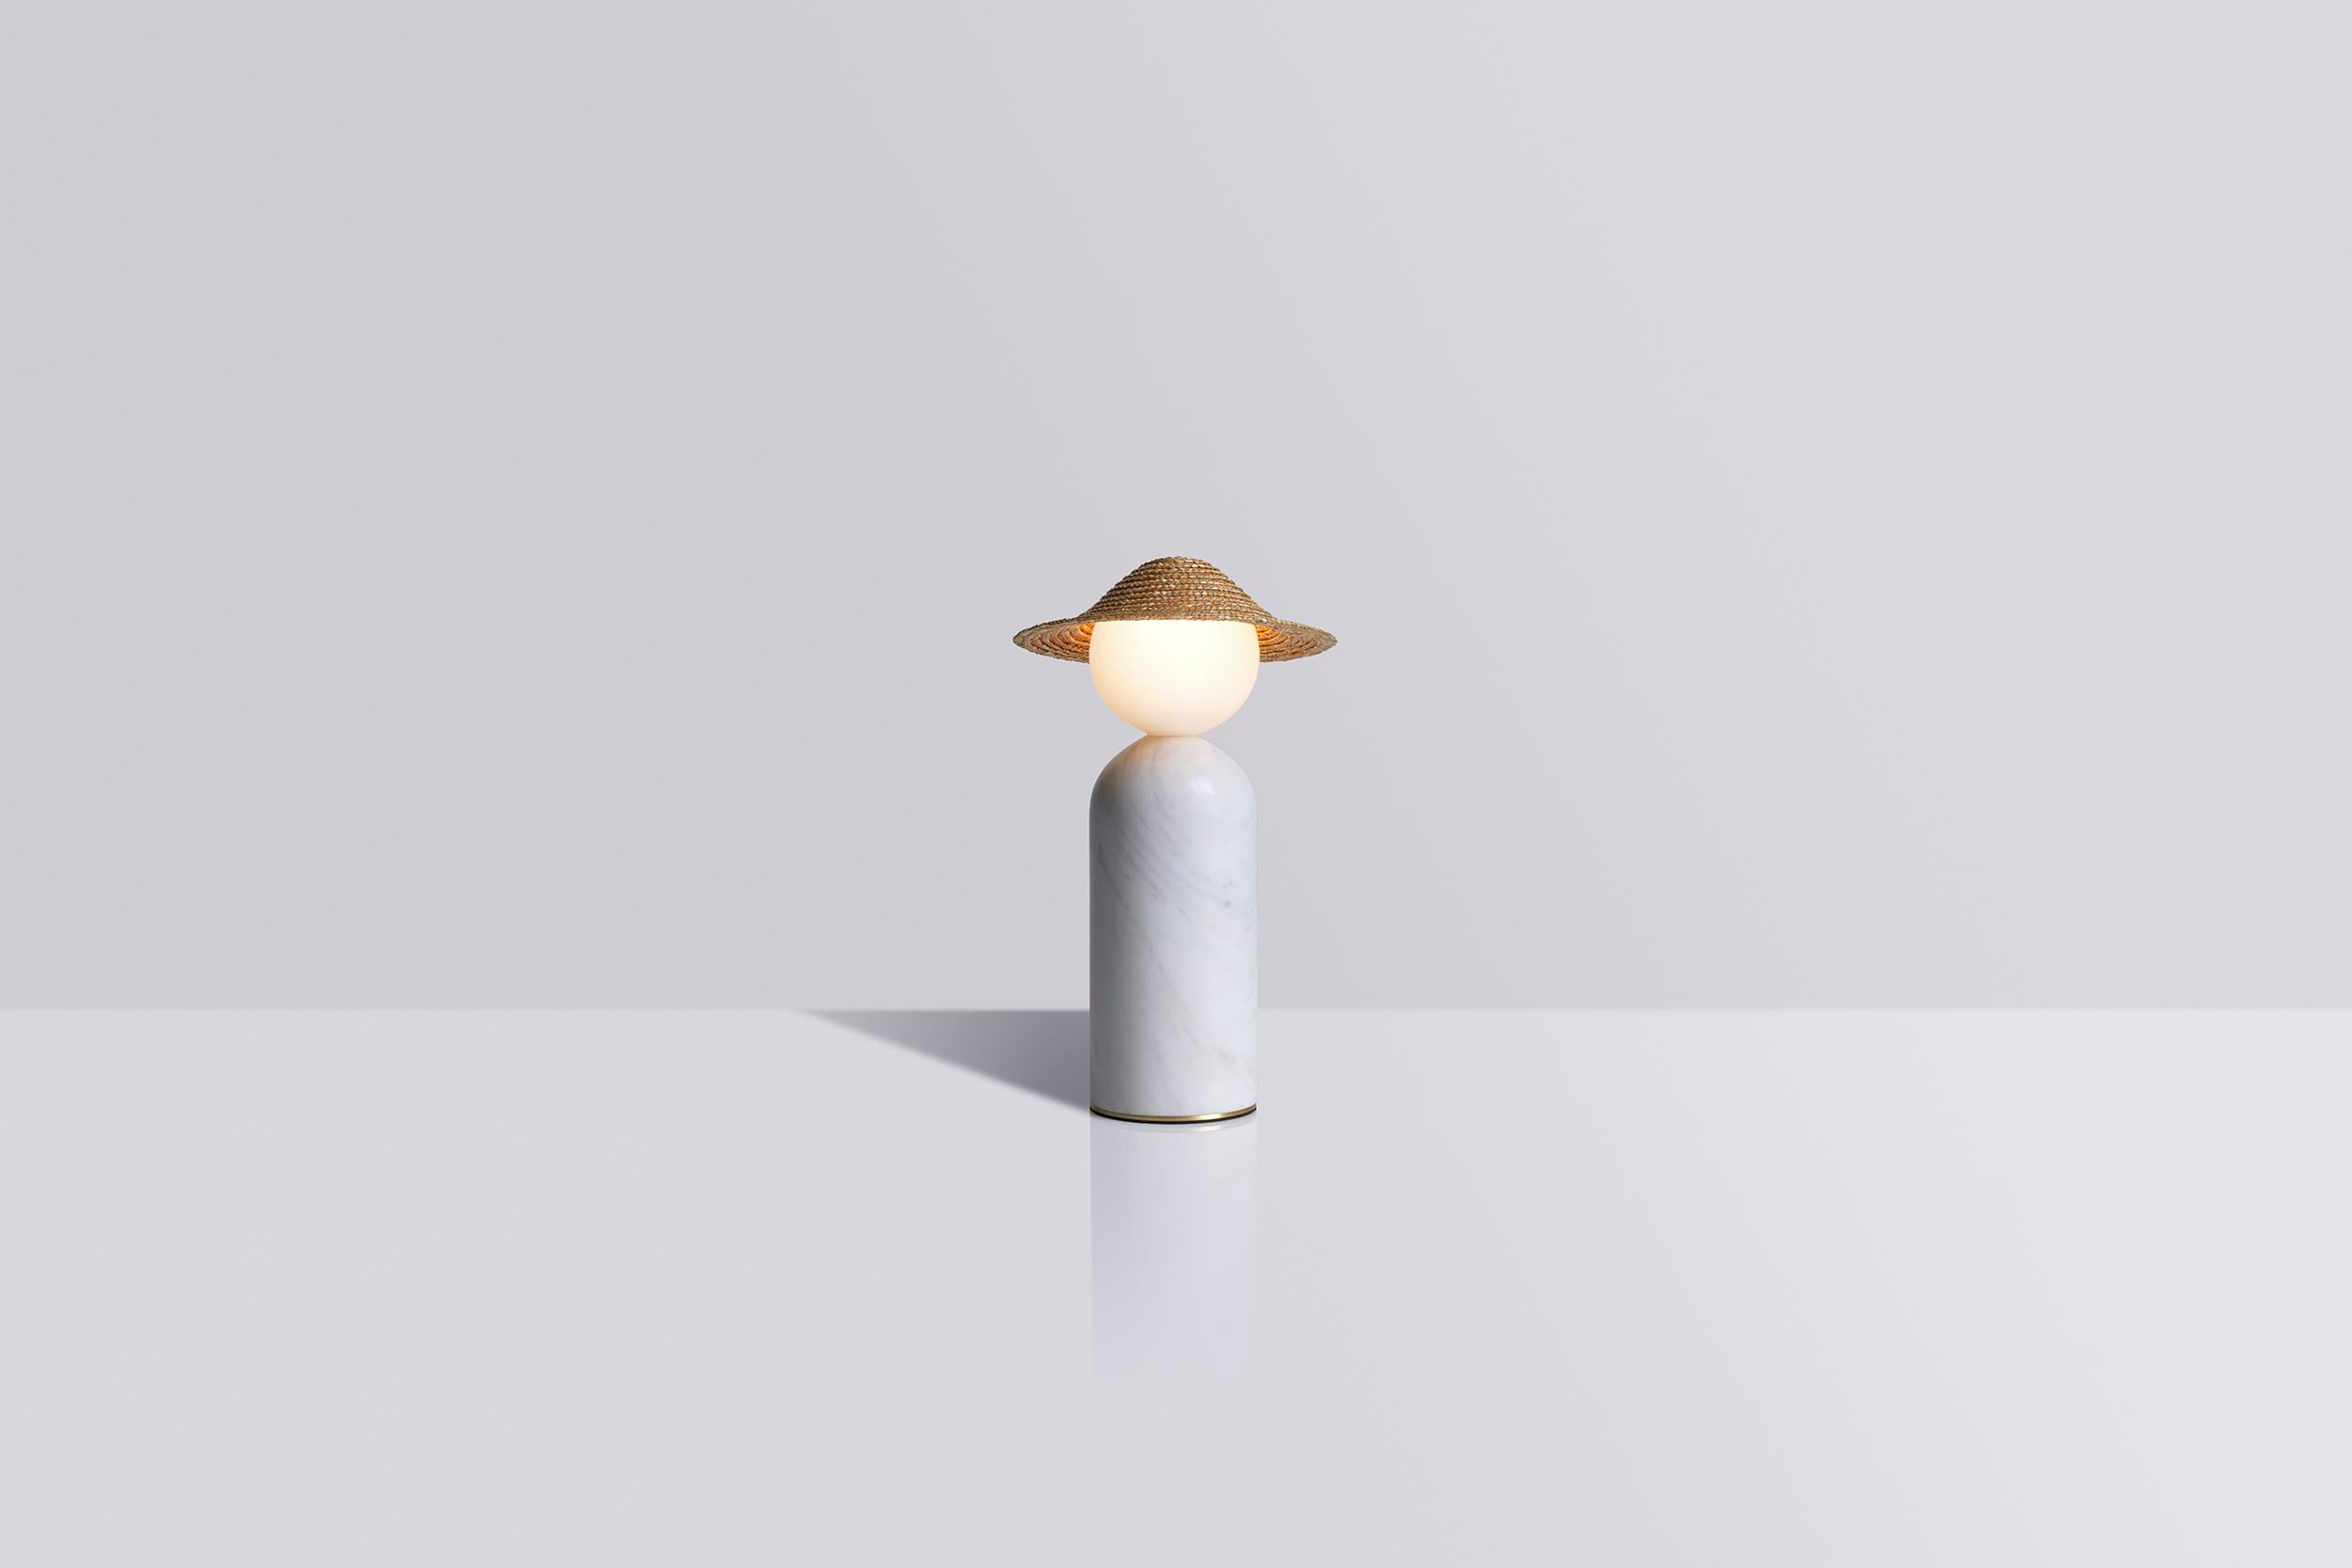 Théros 0.1 est une lampe de table - un geste de design poétique qui associe une forme nette et équilibrée à une histoire personnelle et sincère. L'adorable personnage des lampes évoque dans toute sa simplicité l'image d'un enfant au soleil,